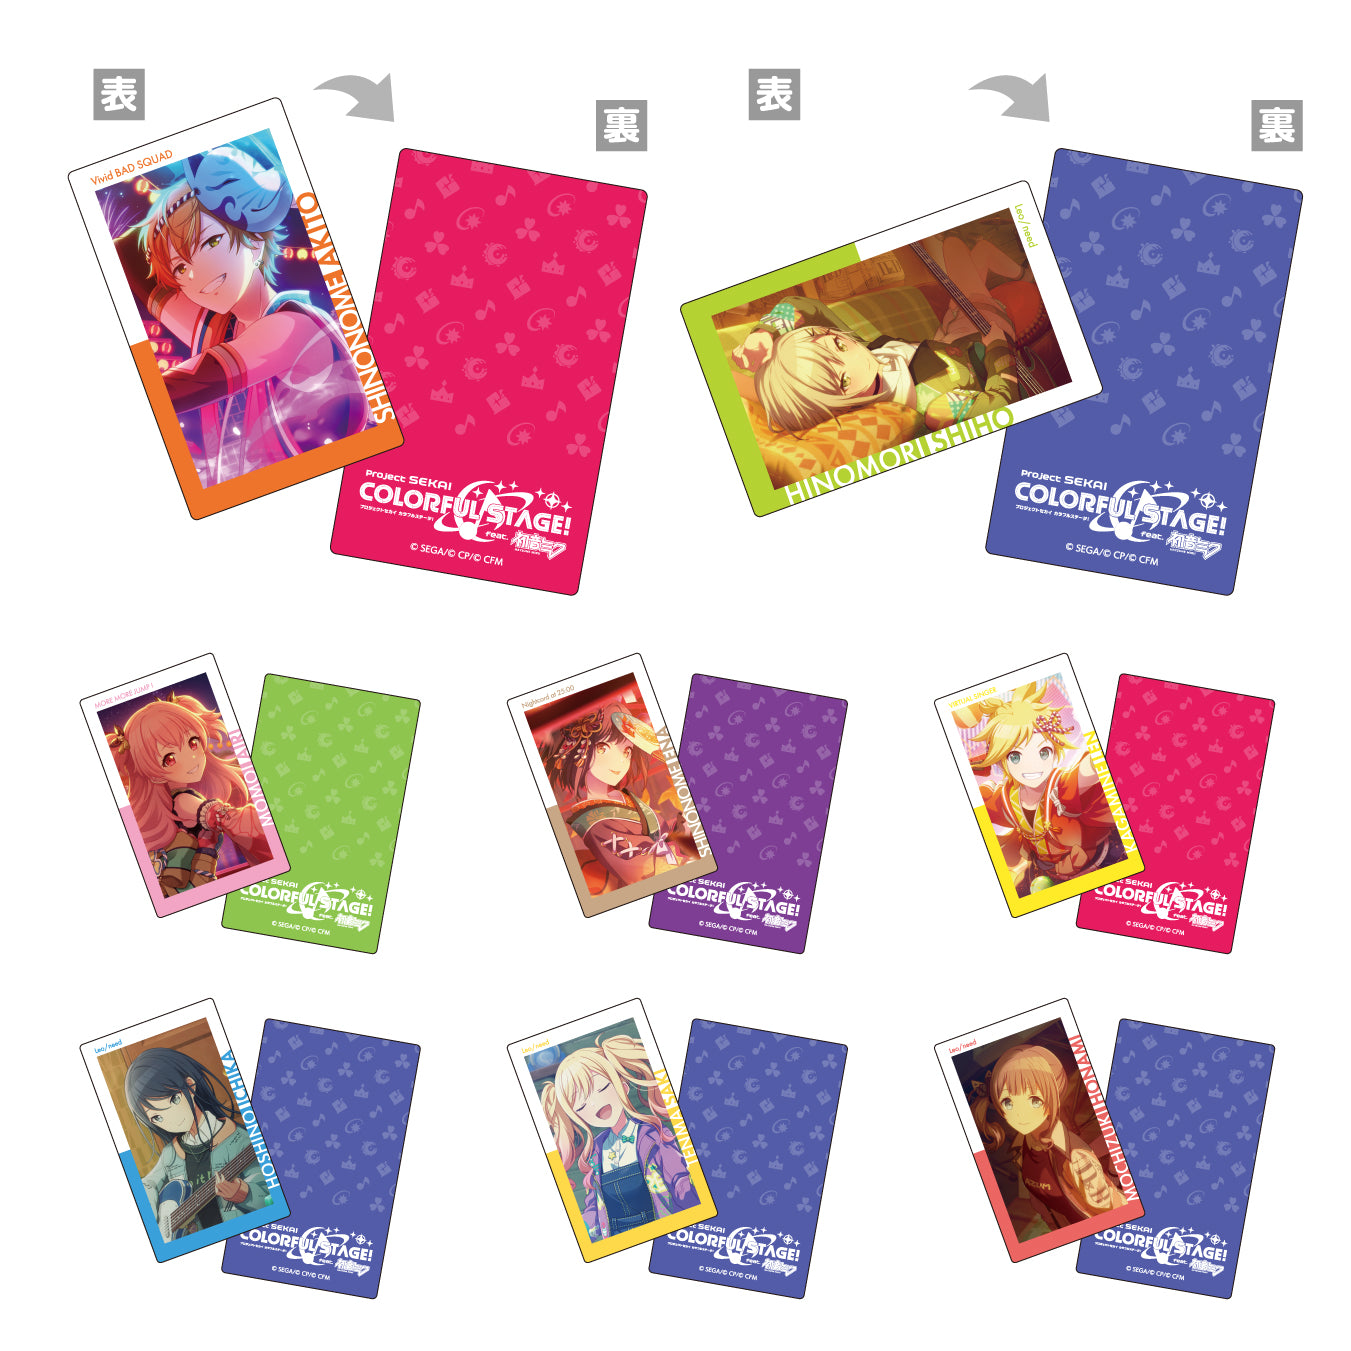 【予約商品】ePick card series vol.4 C